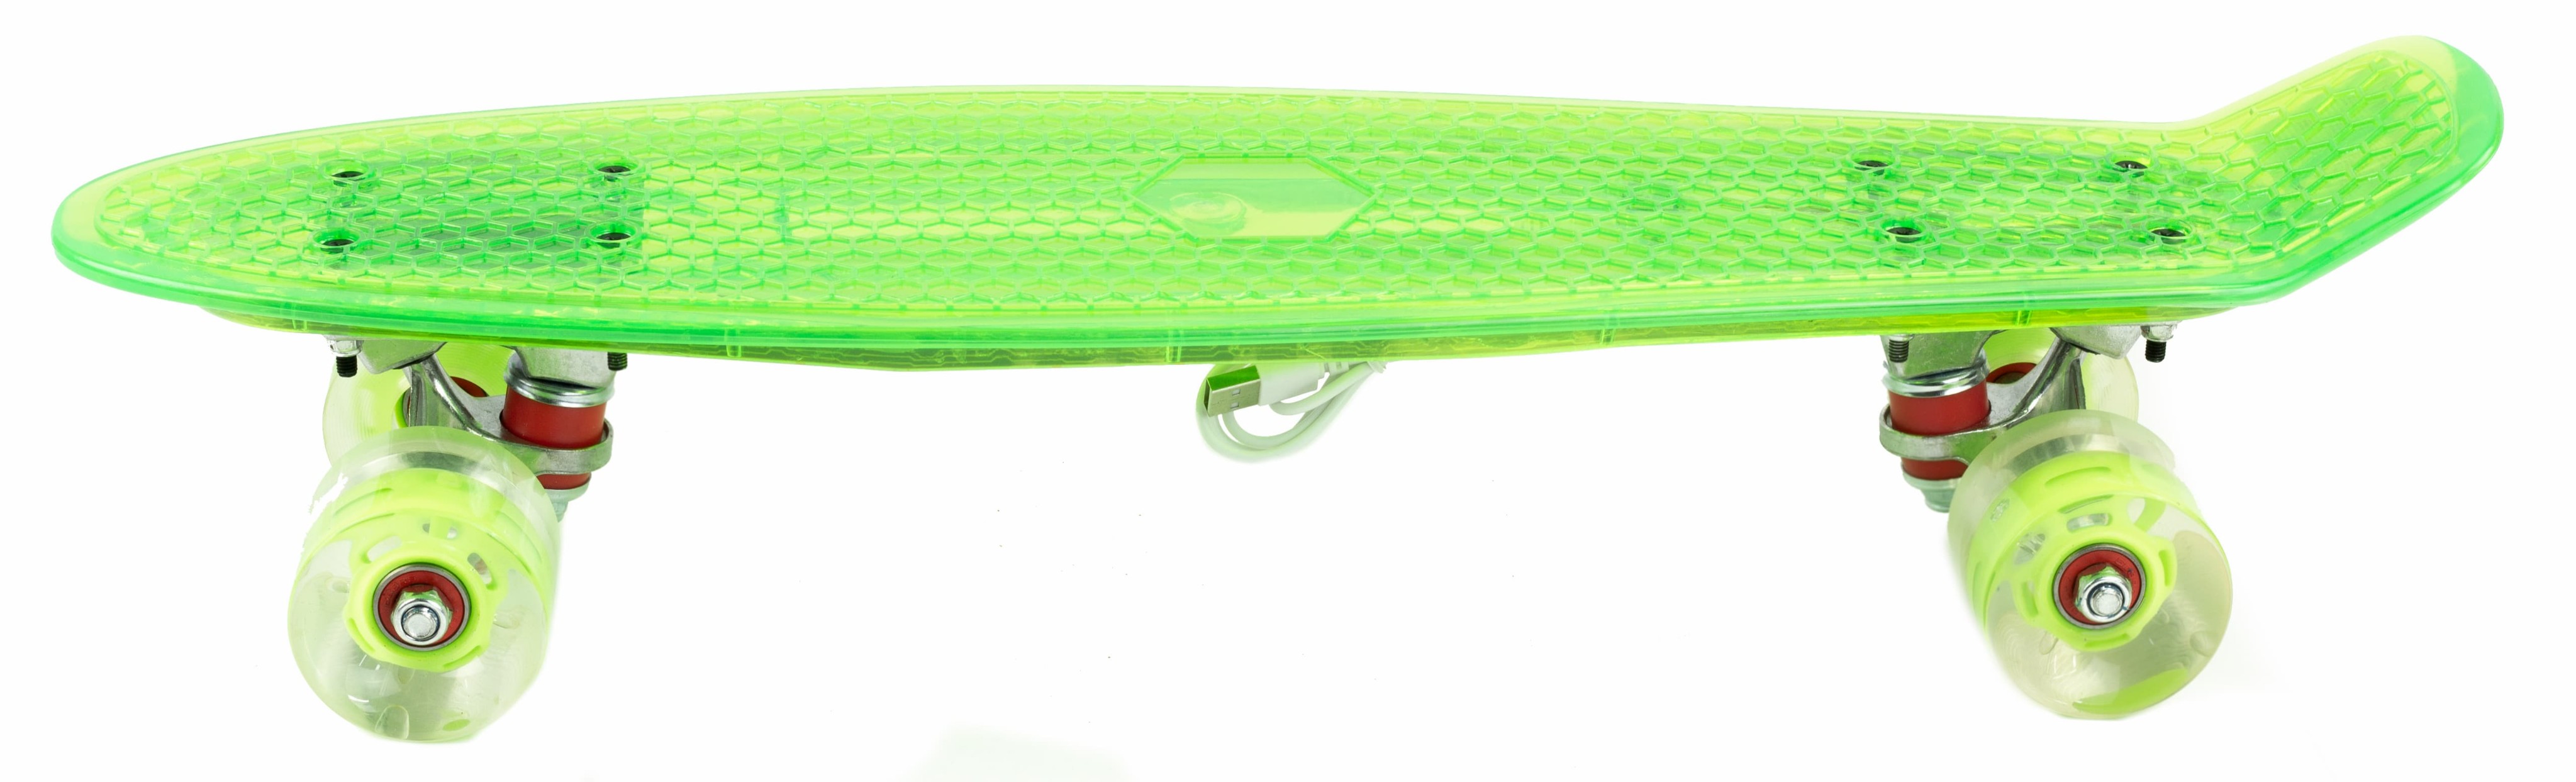 Пенни Борд со светящейся декой и колесами, прозрачный, 55 см. F20502 / Зеленый